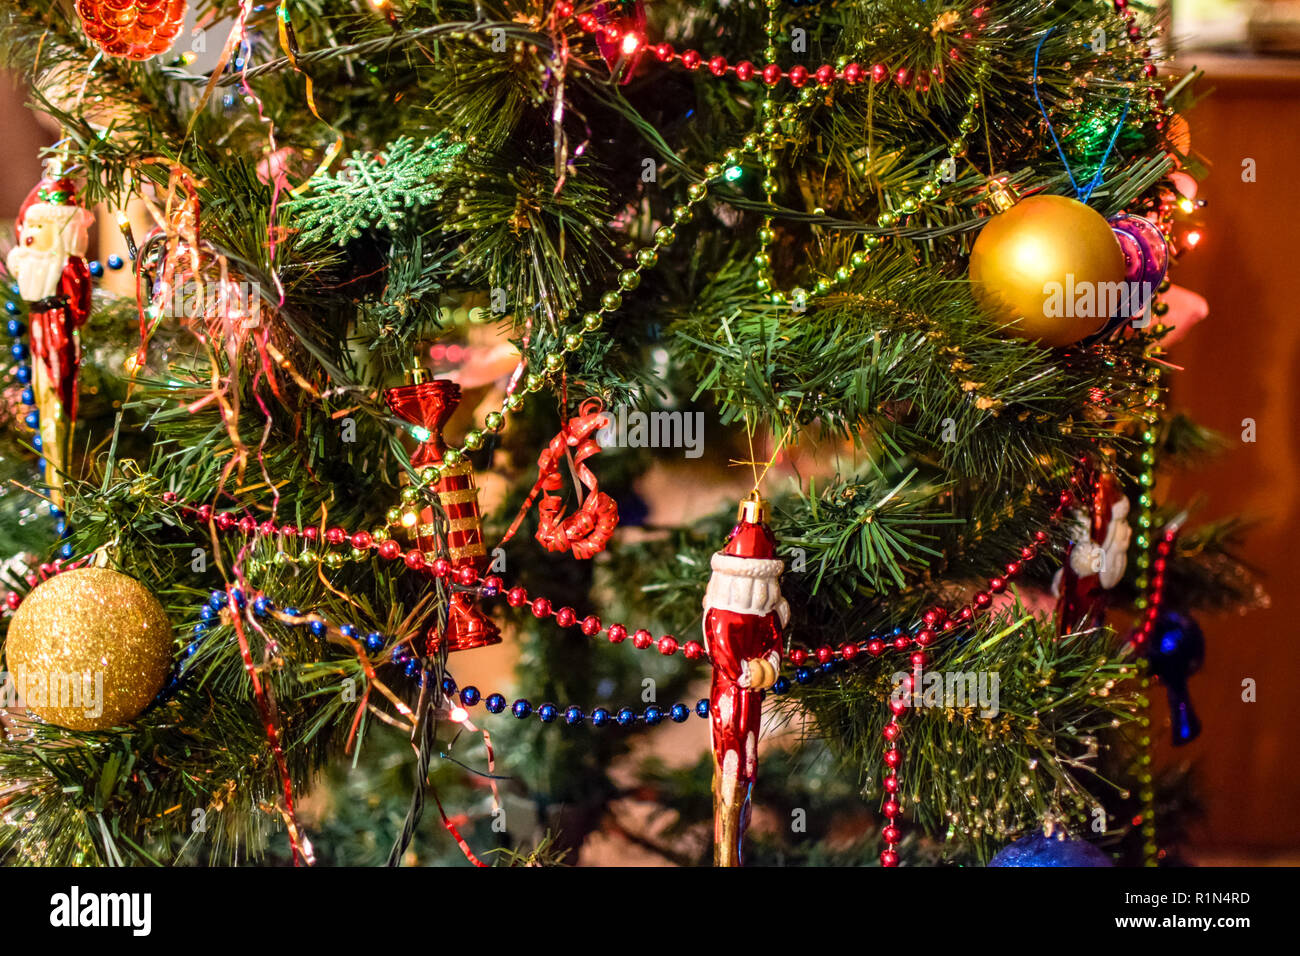 Lametta und Spielzeug, Bälle und andere Dekorationen auf der Weihnachten  Weihnachtsbaum stand in der freien Luft. Dekoration Tannenbaum  Stockfotografie - Alamy